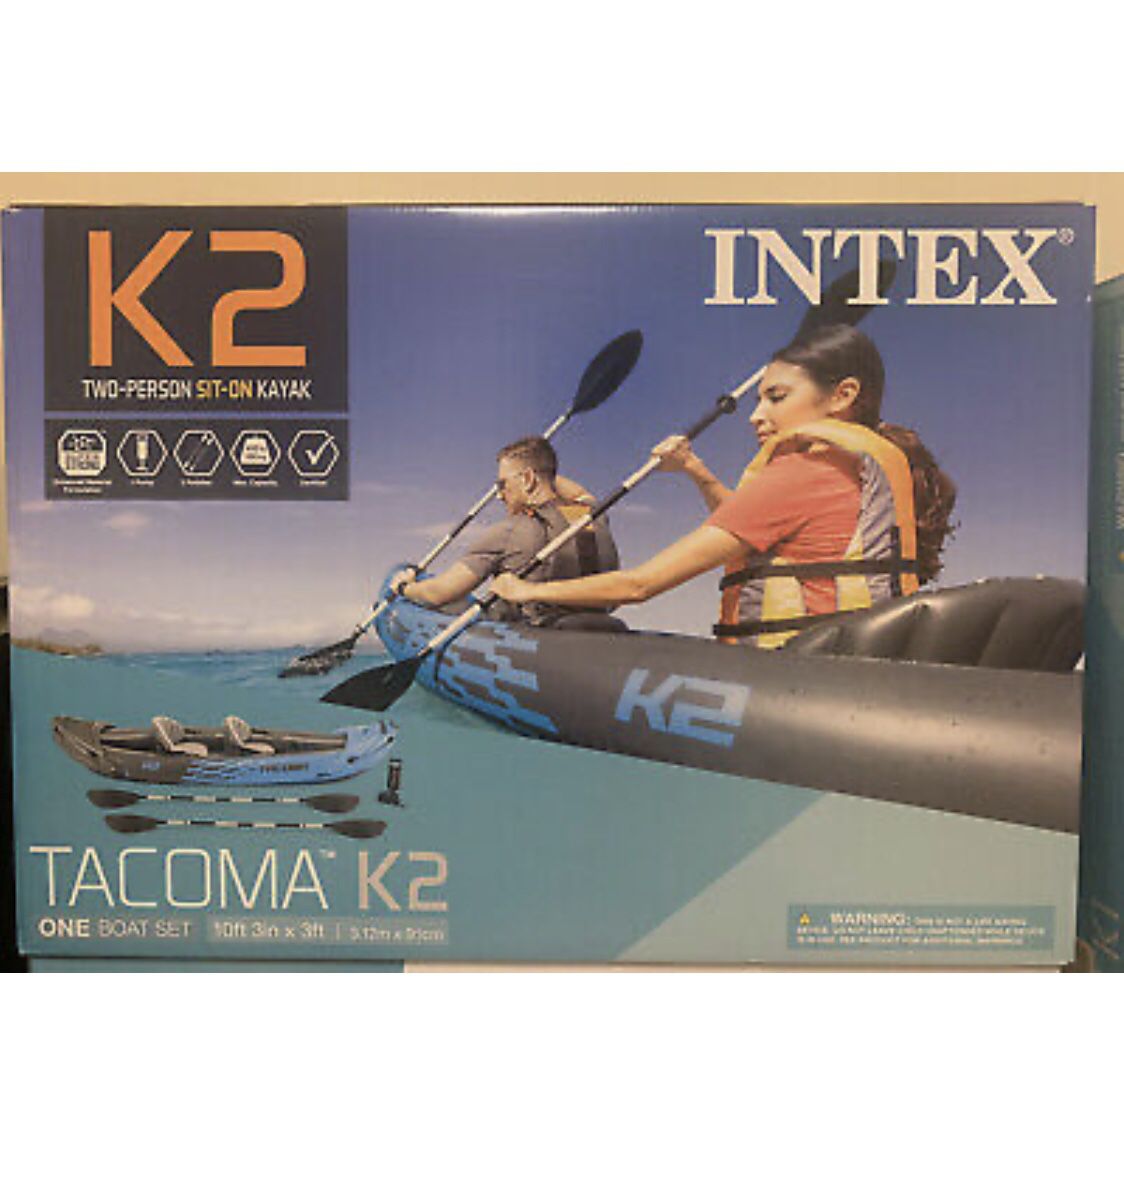 NEW Intex Tacoma K2 Two-Person Inflatable Kayak (Pump, Paddles, & Bag)